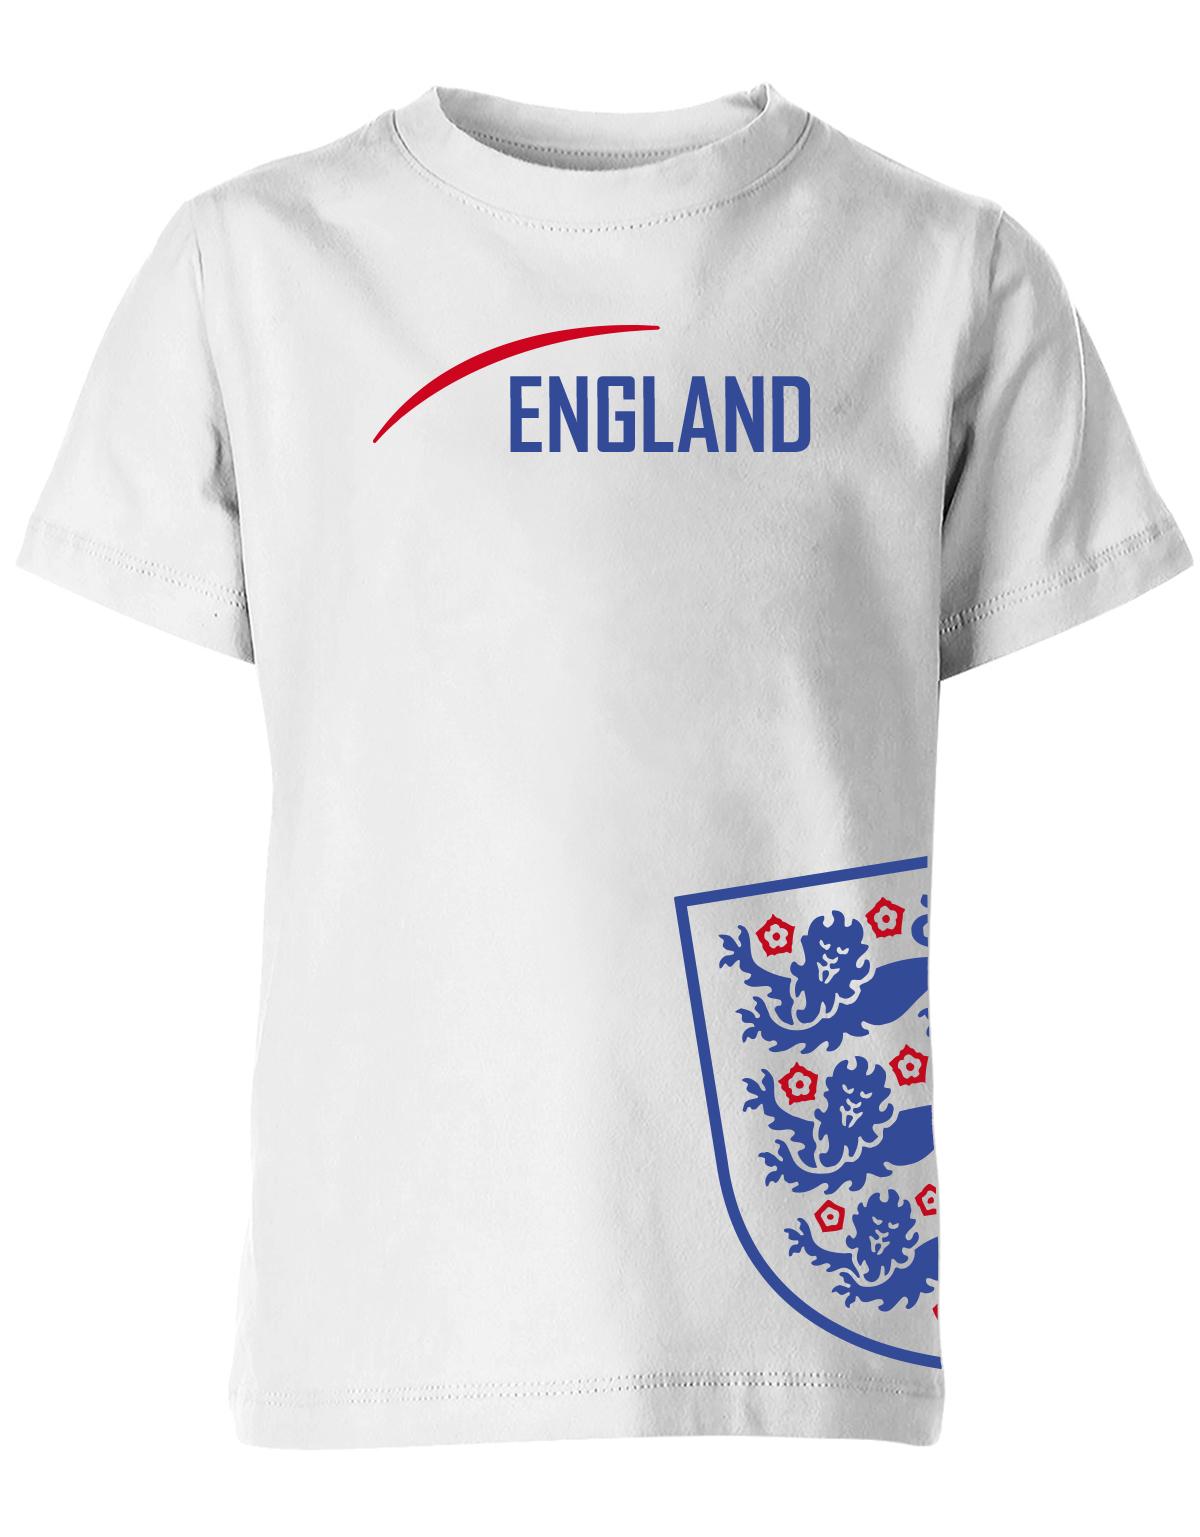 England-Kinder-Shirt-Weiss